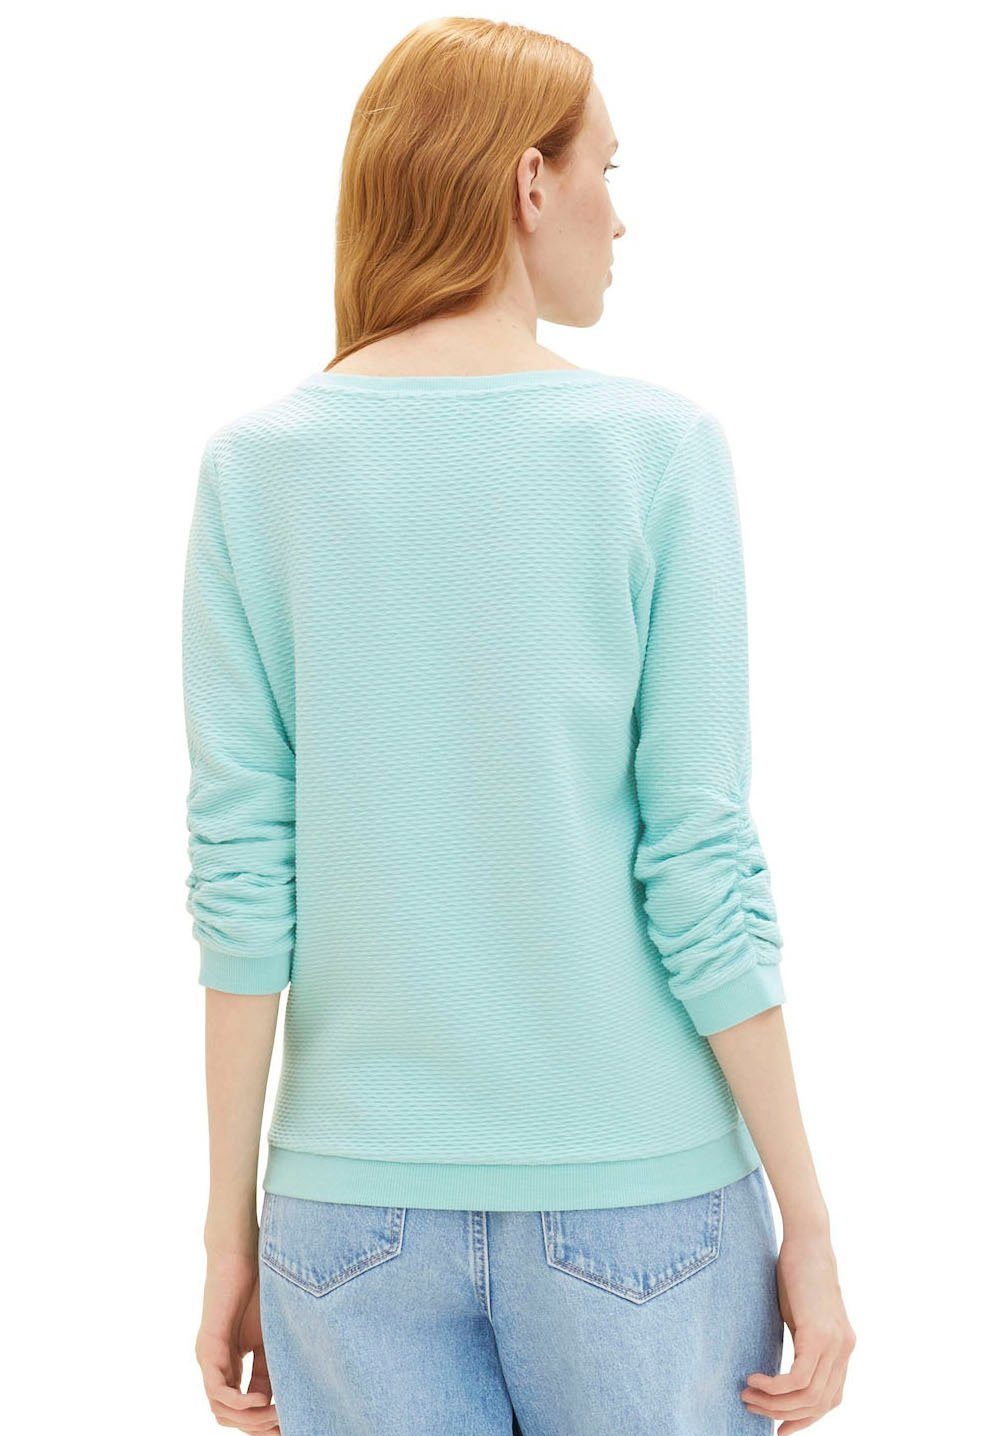 TOM TAILOR Denim Sweatshirt mit Materialoberfläche turquoise besonderer pastel